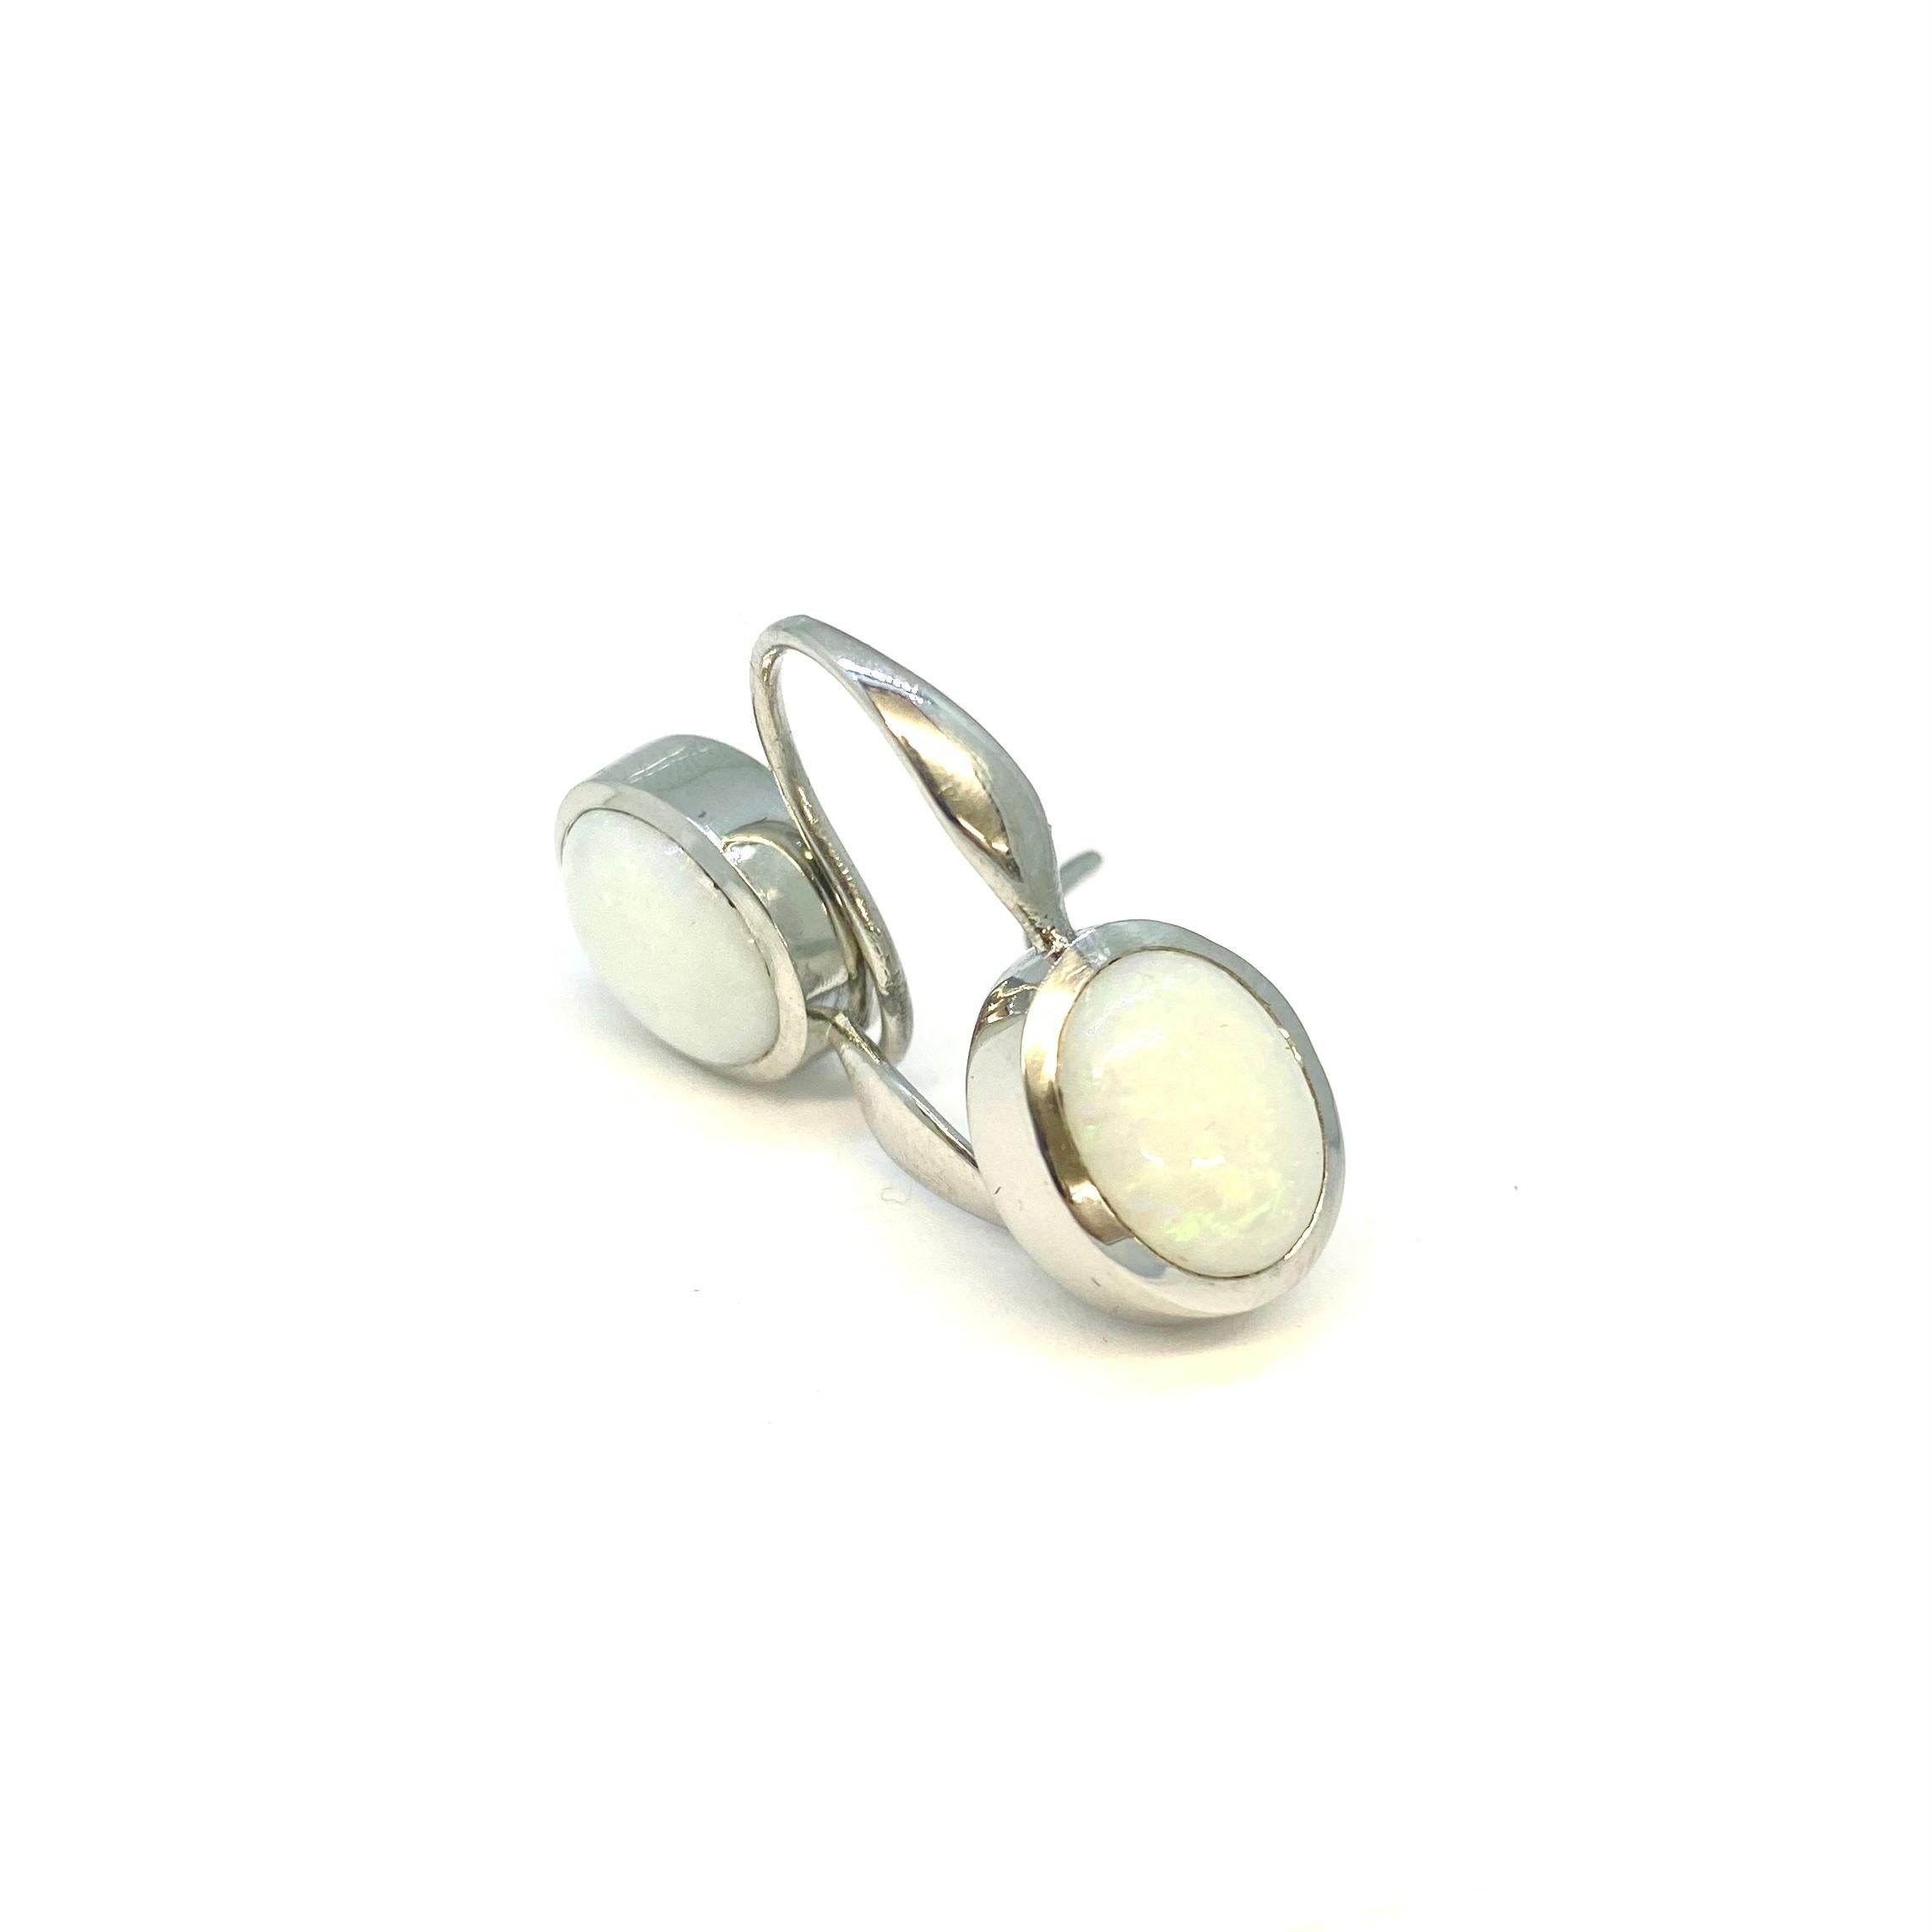 Ohrringe aus poliertem Platin 950 mit 2 weißen australischen Opalen, Cabochon-Schliff, 5,10ct.

Lesunja ist eine Marke, die für ihre luxuriösen Schmuckkollektionen bekannt ist. Die Ohrring-Kollektion bildet da keine Ausnahme: Sie umfasst klassische